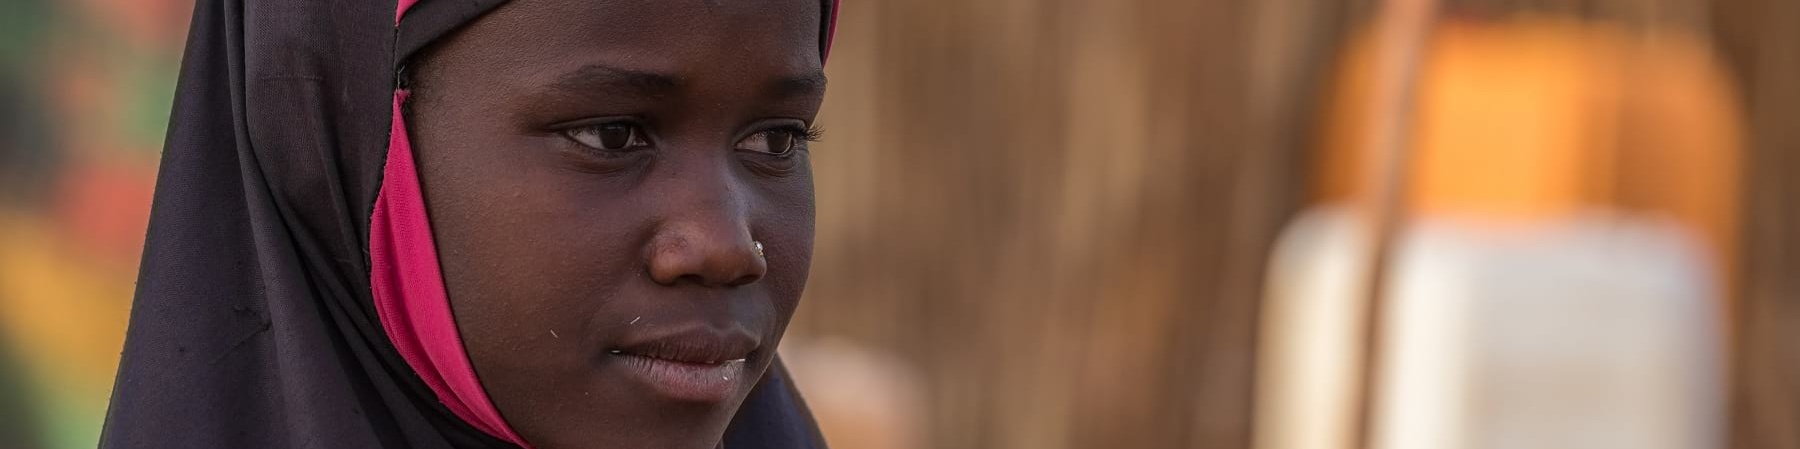 Primo piano di profilo di una bambina africana che indossa un hijab rosa e nero